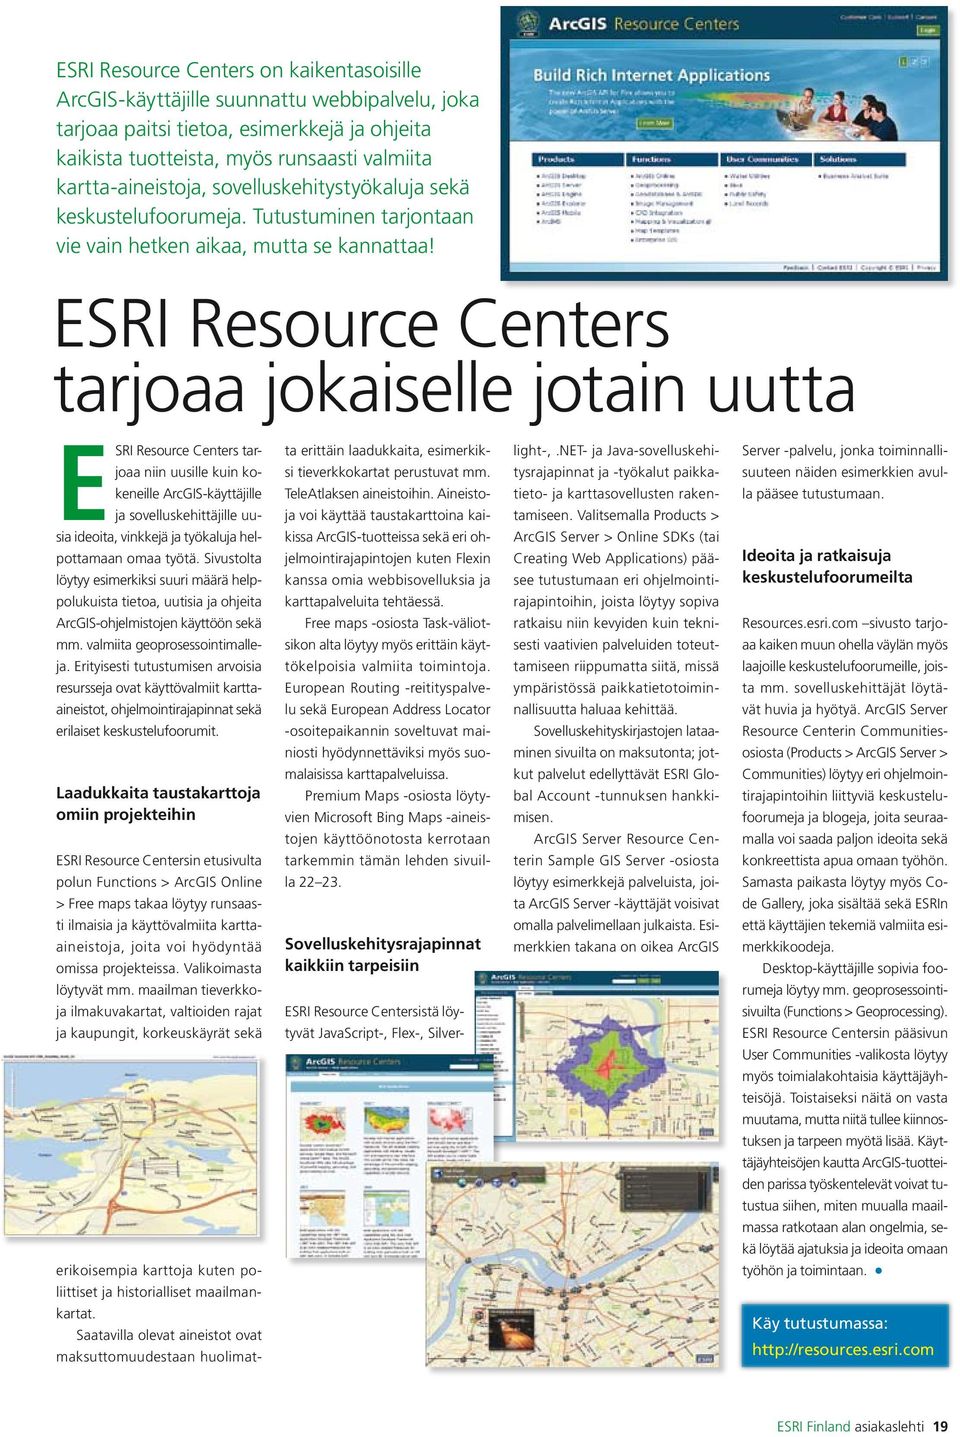 ESRI Resource Centers tarjoaa jokaiselle jotain uutta ESRI Resource Centers tarjoaa niin uusille kuin kokeneille ArcGIS-käyttäjille ja sovelluskehittäjille uusia ideoita, vinkkejä ja työkaluja